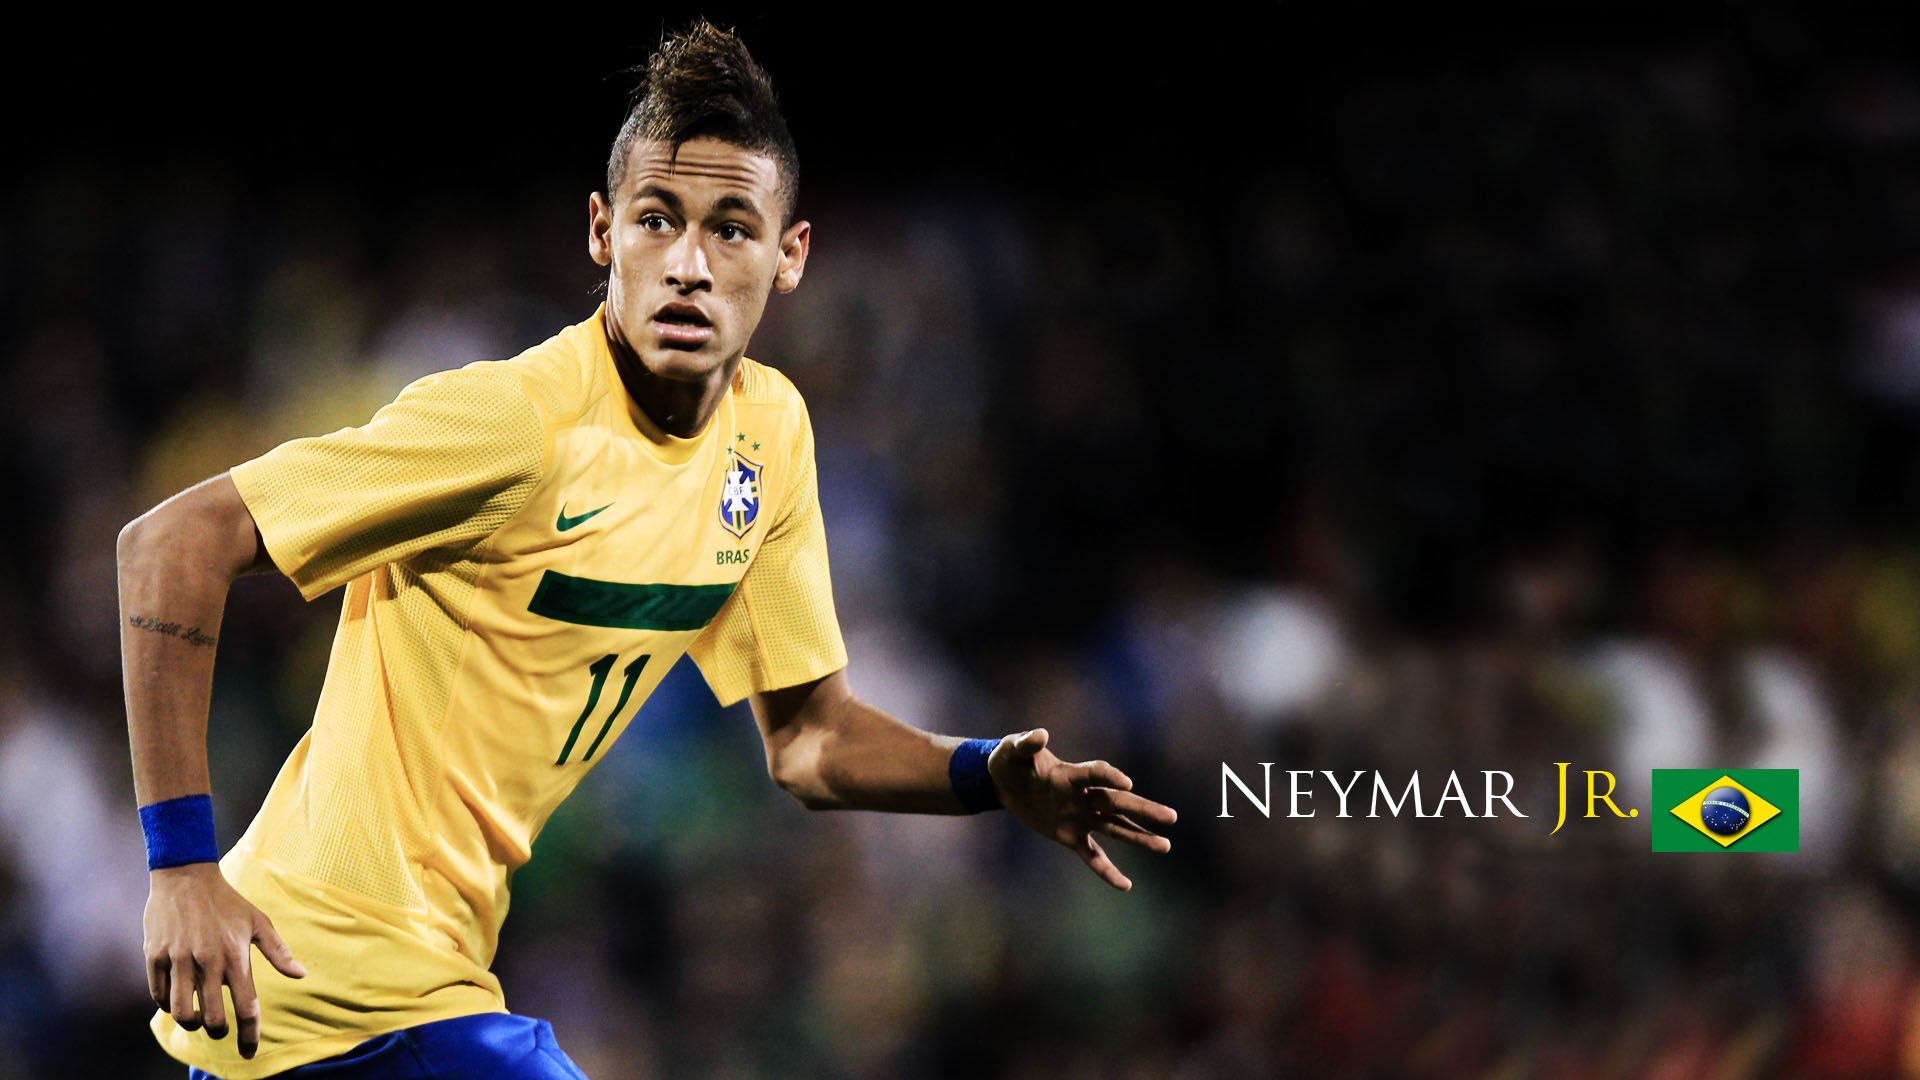 Neymar hd wallpapers 2017